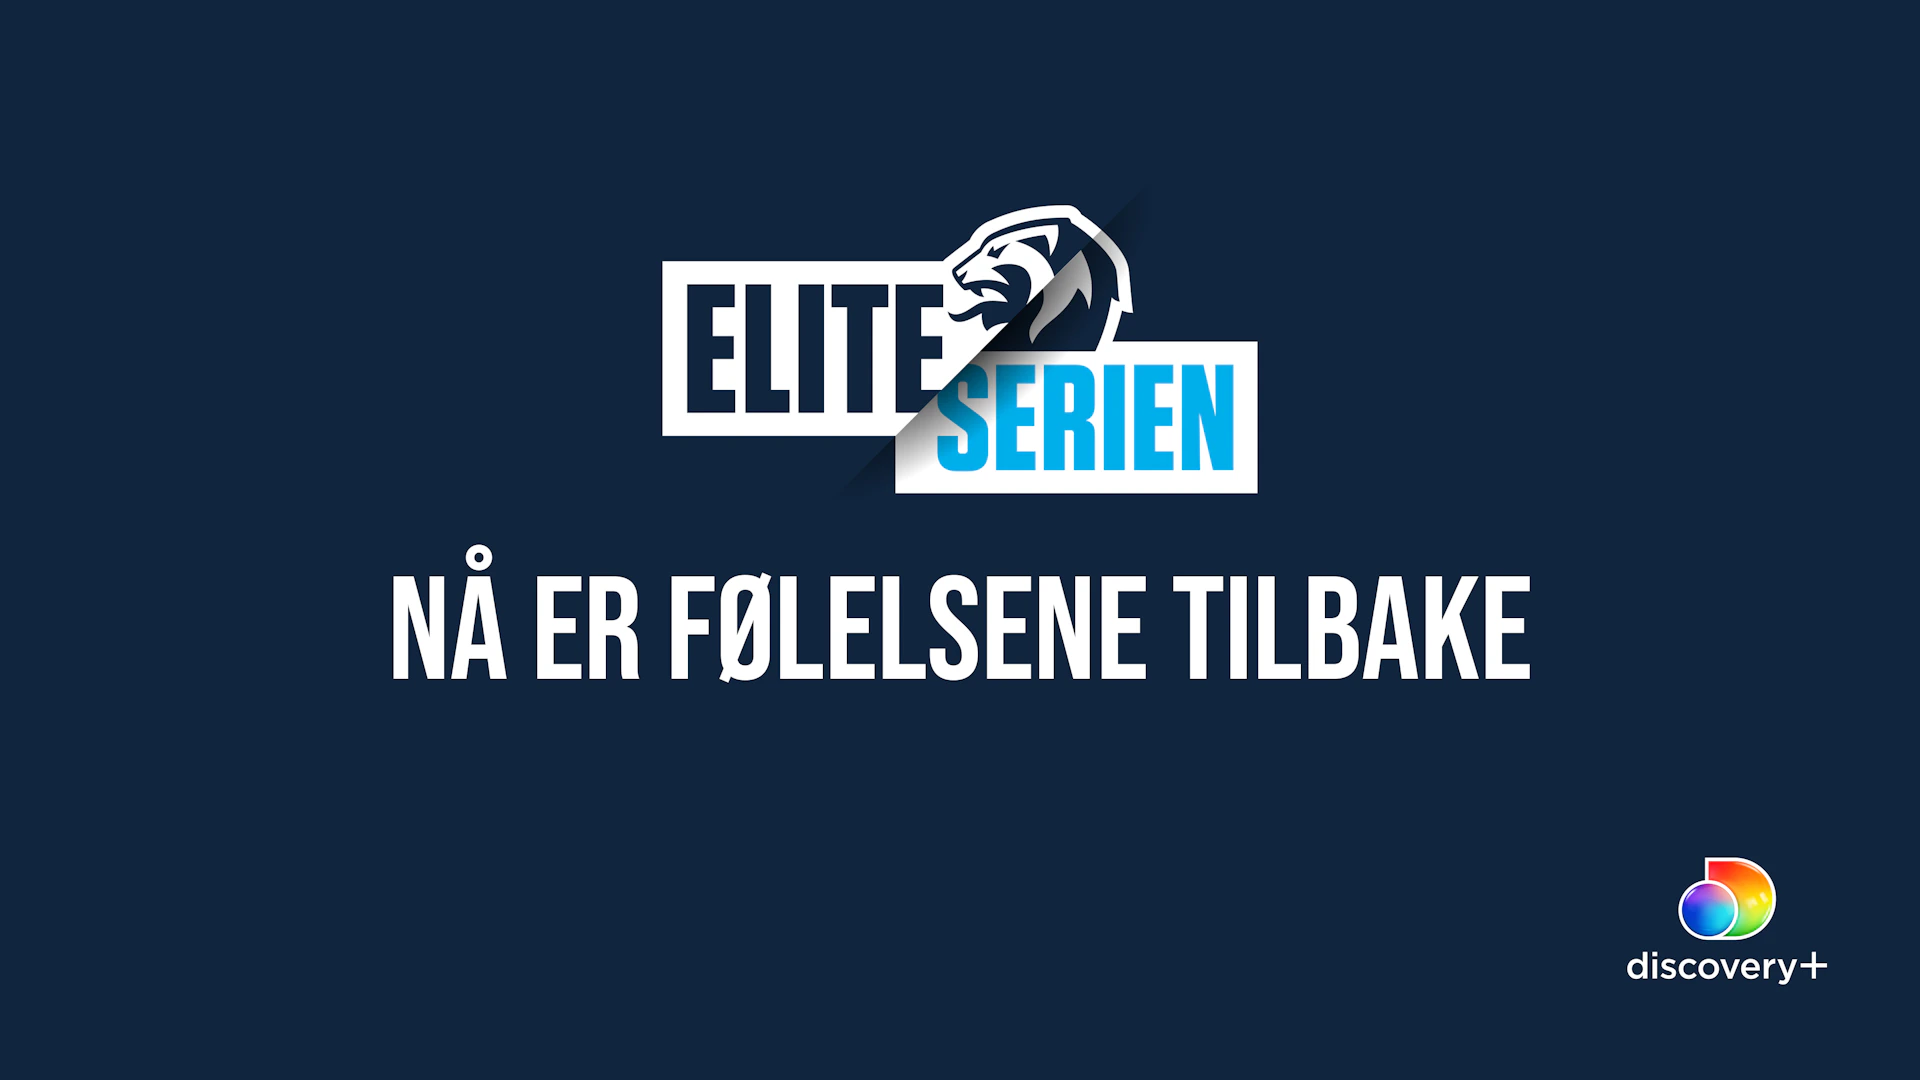 Za J Bl V Yj Eliteserien følelsenetilbake